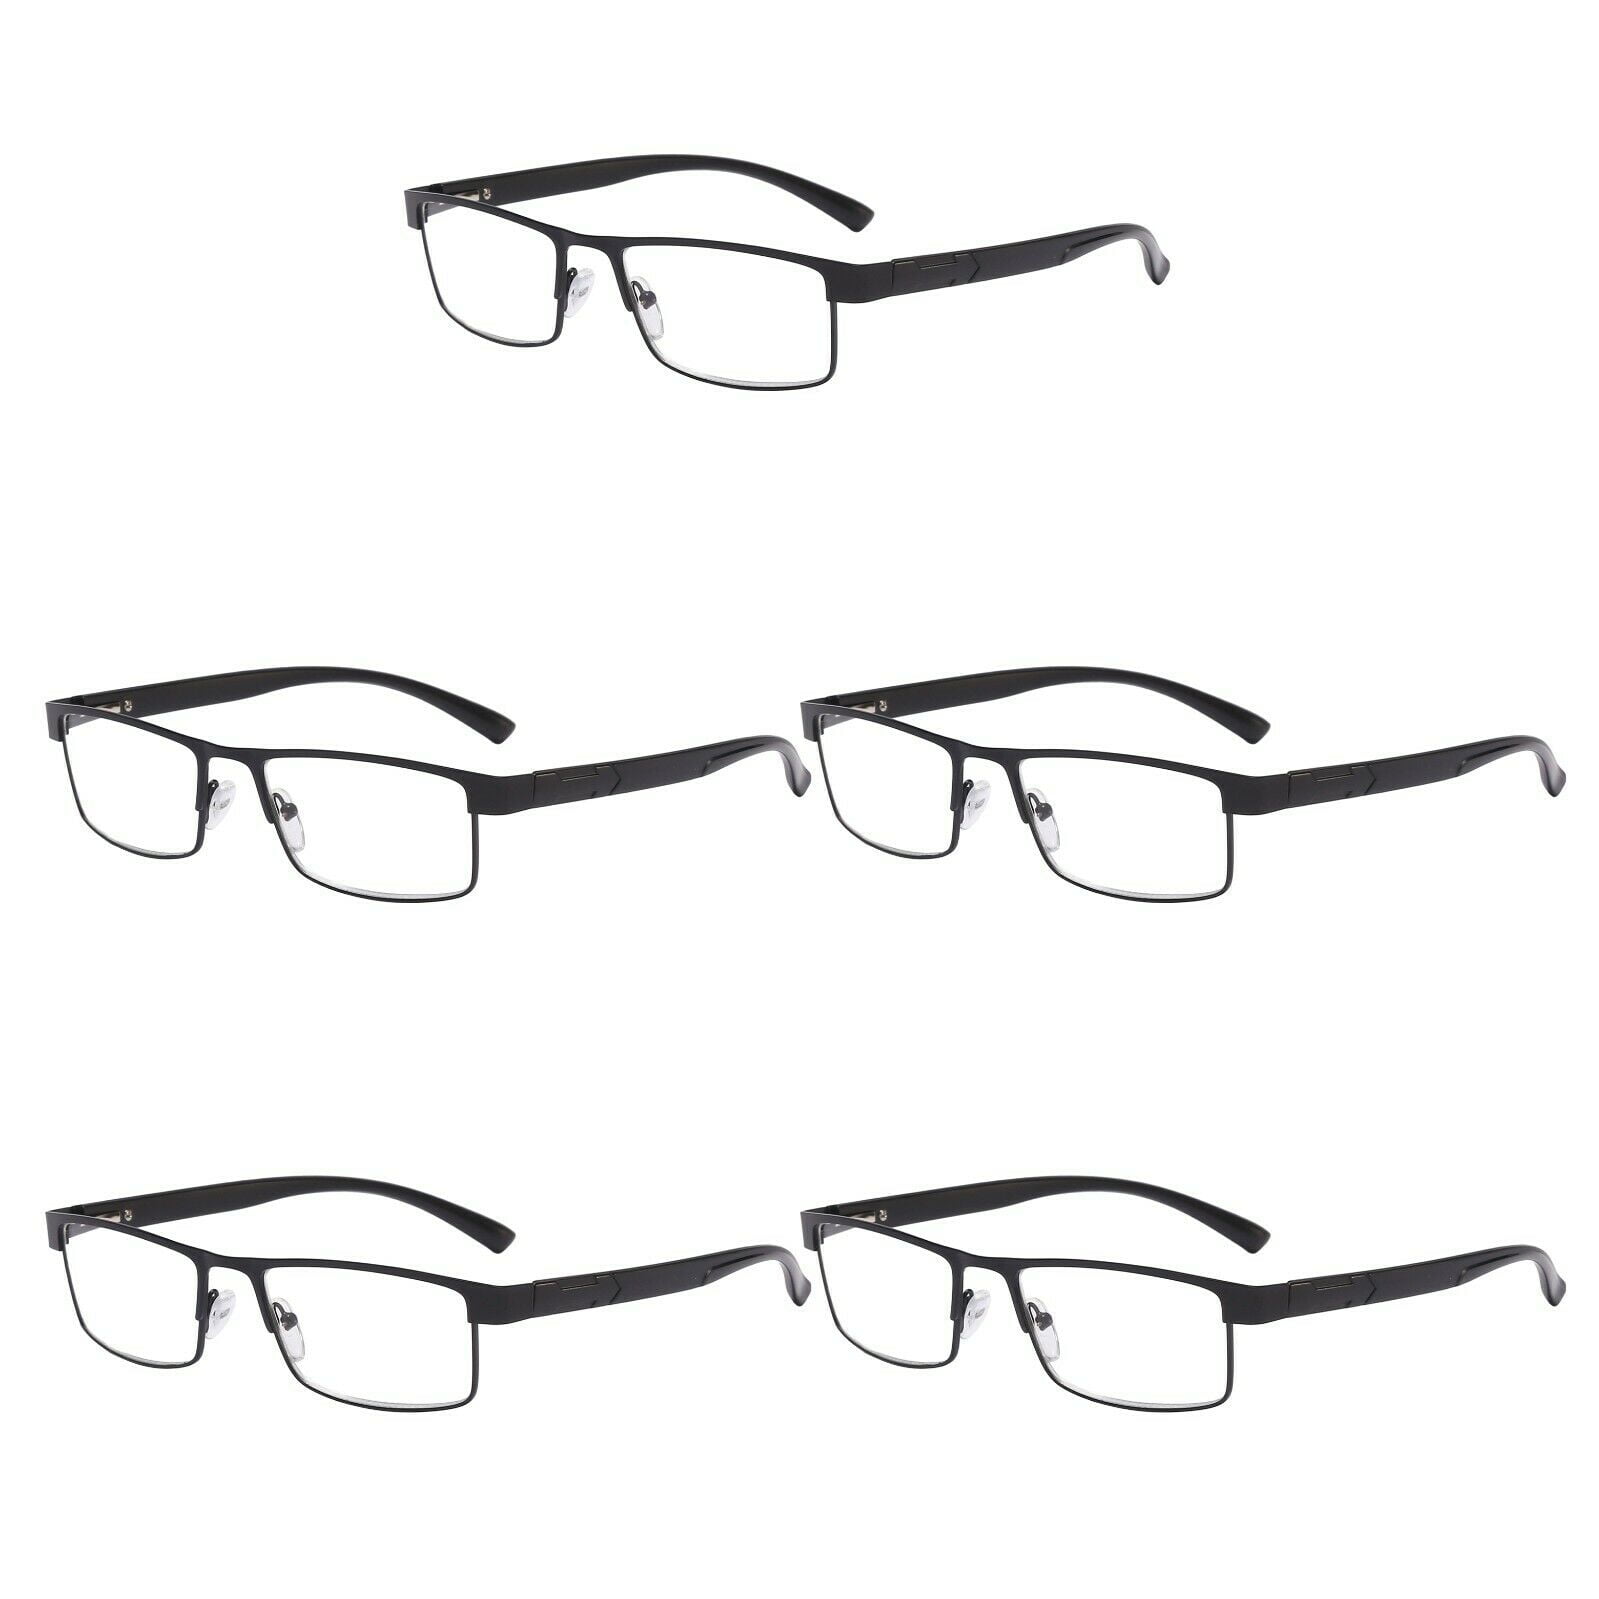 5 Packs Classic Style Rectangular Metal Frame Reading Glasses Spring Hinge Readers For Men Women